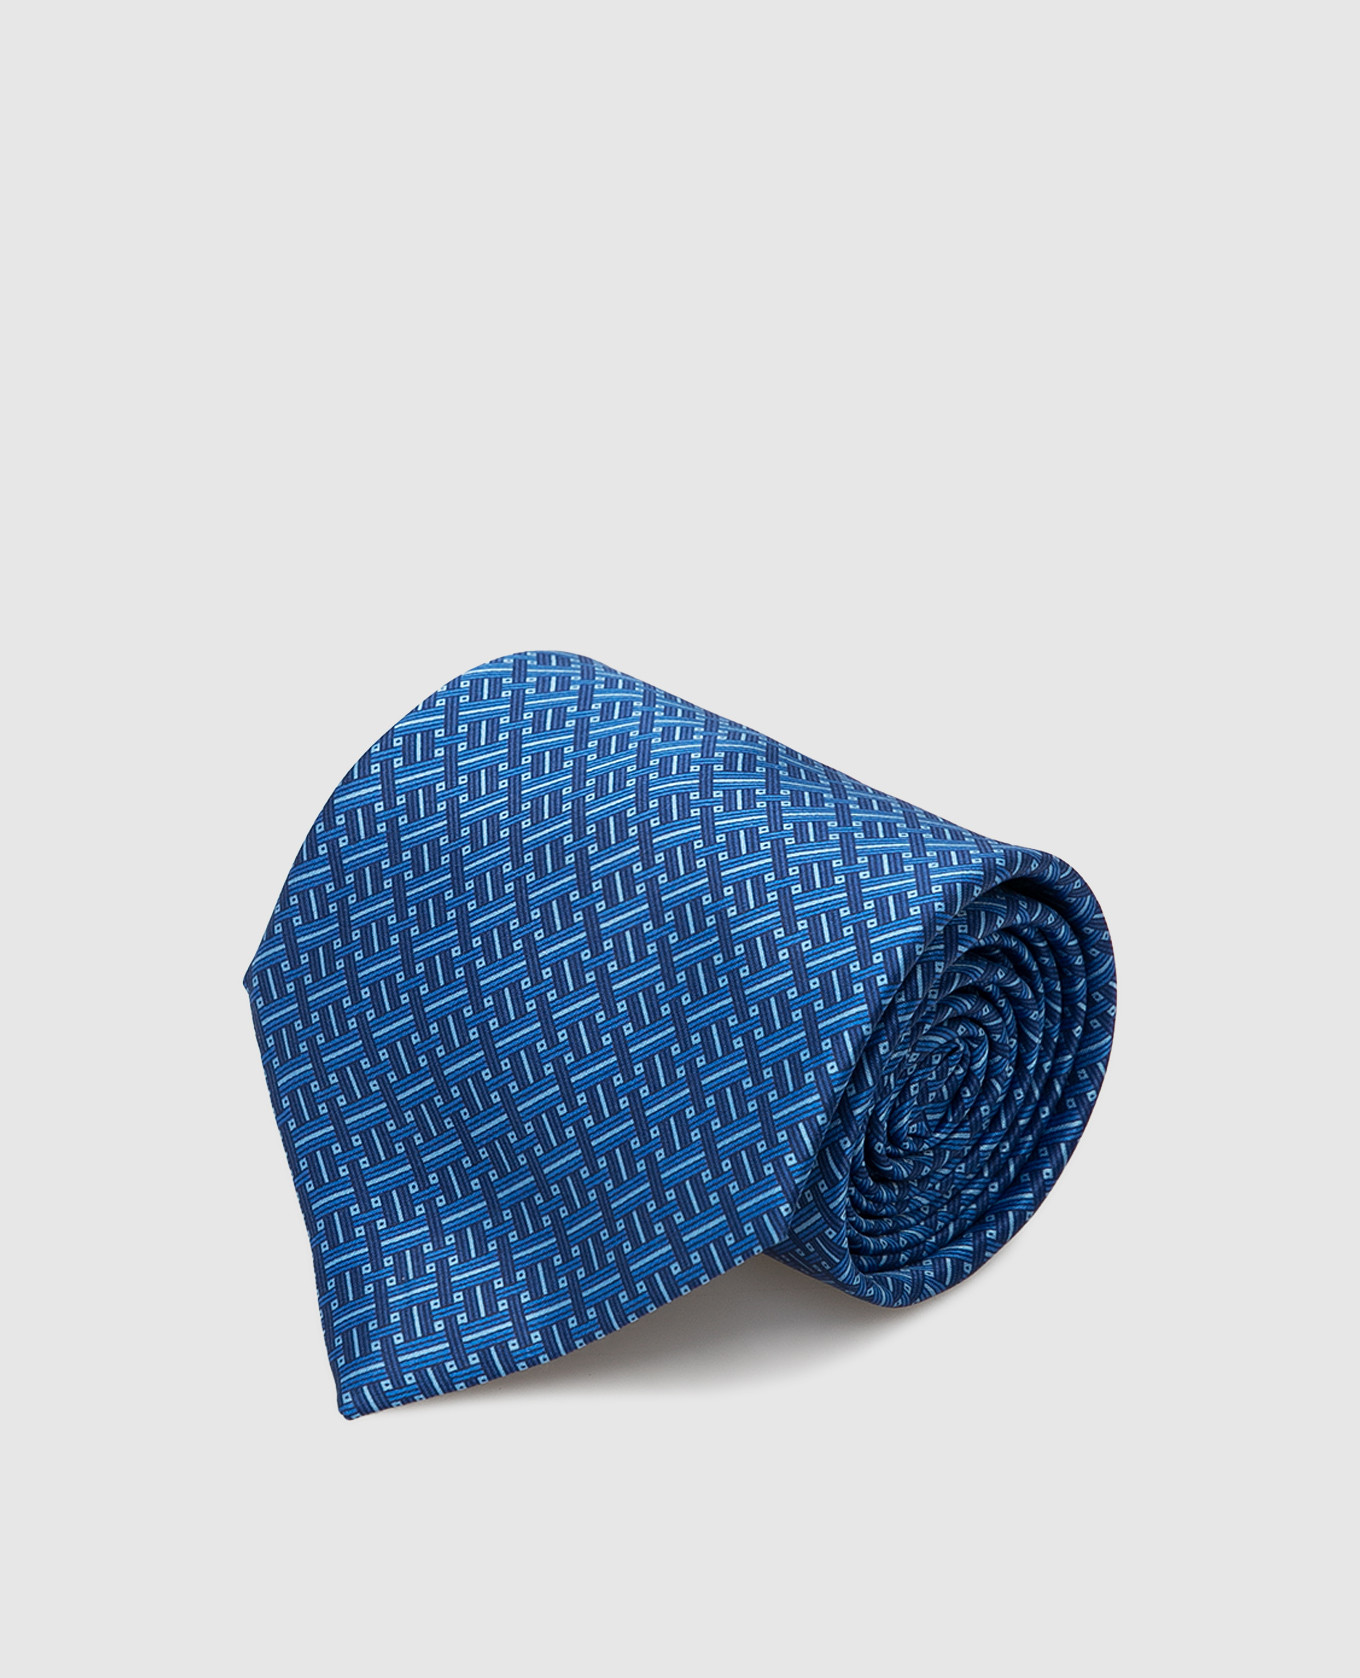 Blue silk tie in geometric pattern